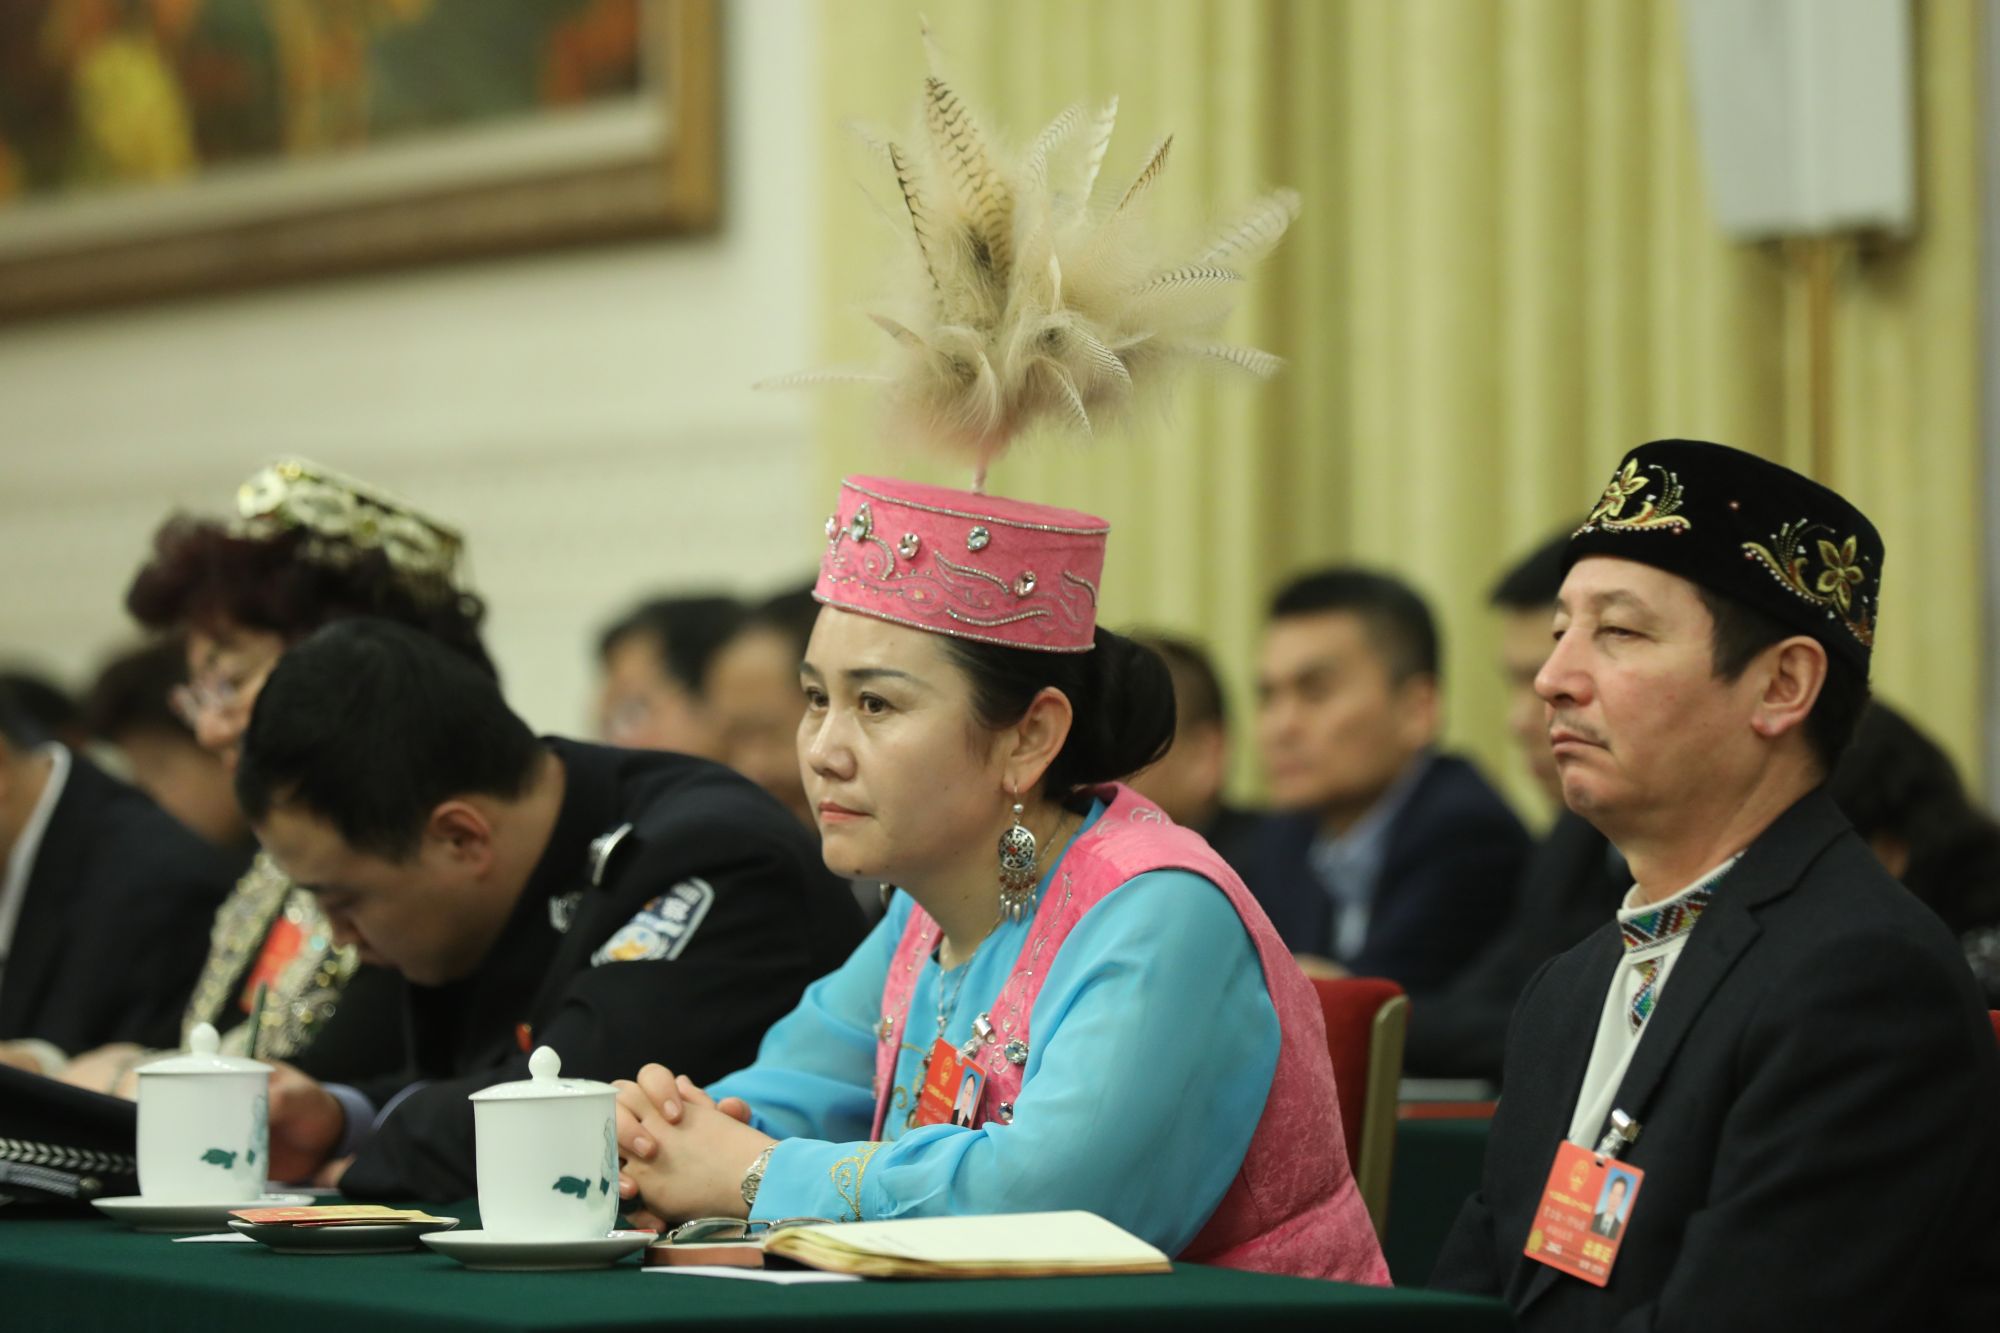 Hszincsiang tartomány ujgur autonóm kisebbséghez tartozó delegáltjai a 13. Nemzeti Népi Kongresszuson Pekingben, 2018. március 13-án. A Nemzeti Népi Kongresszuson több, mint 3000 delegált vesz részt, ezzel a világ legnagyobb törvényhozó gyűlése, bár funkciója inkább formális, és kimerül a pártvezetés javaslatainak elfogadásában. EPA/WU HONG